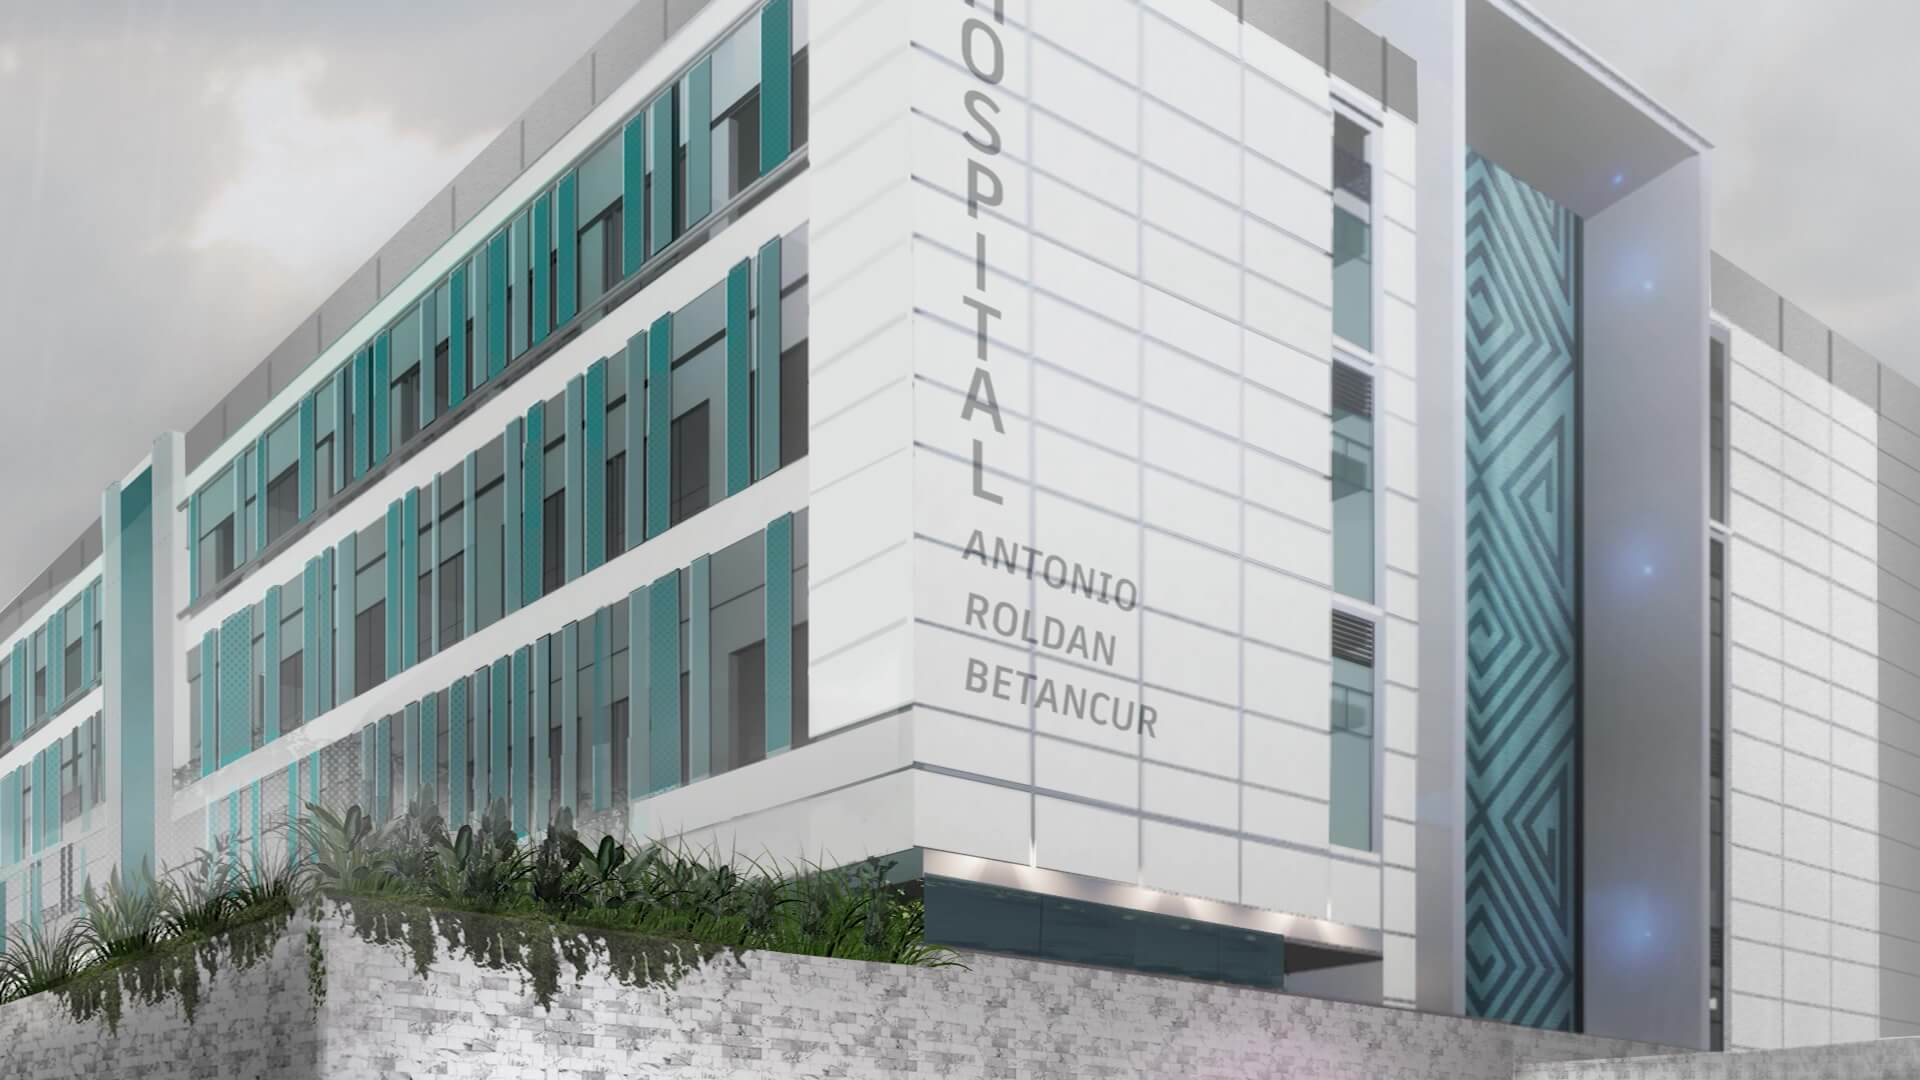 Firmaron contrato para construir el hospital más moderno de Antioquia